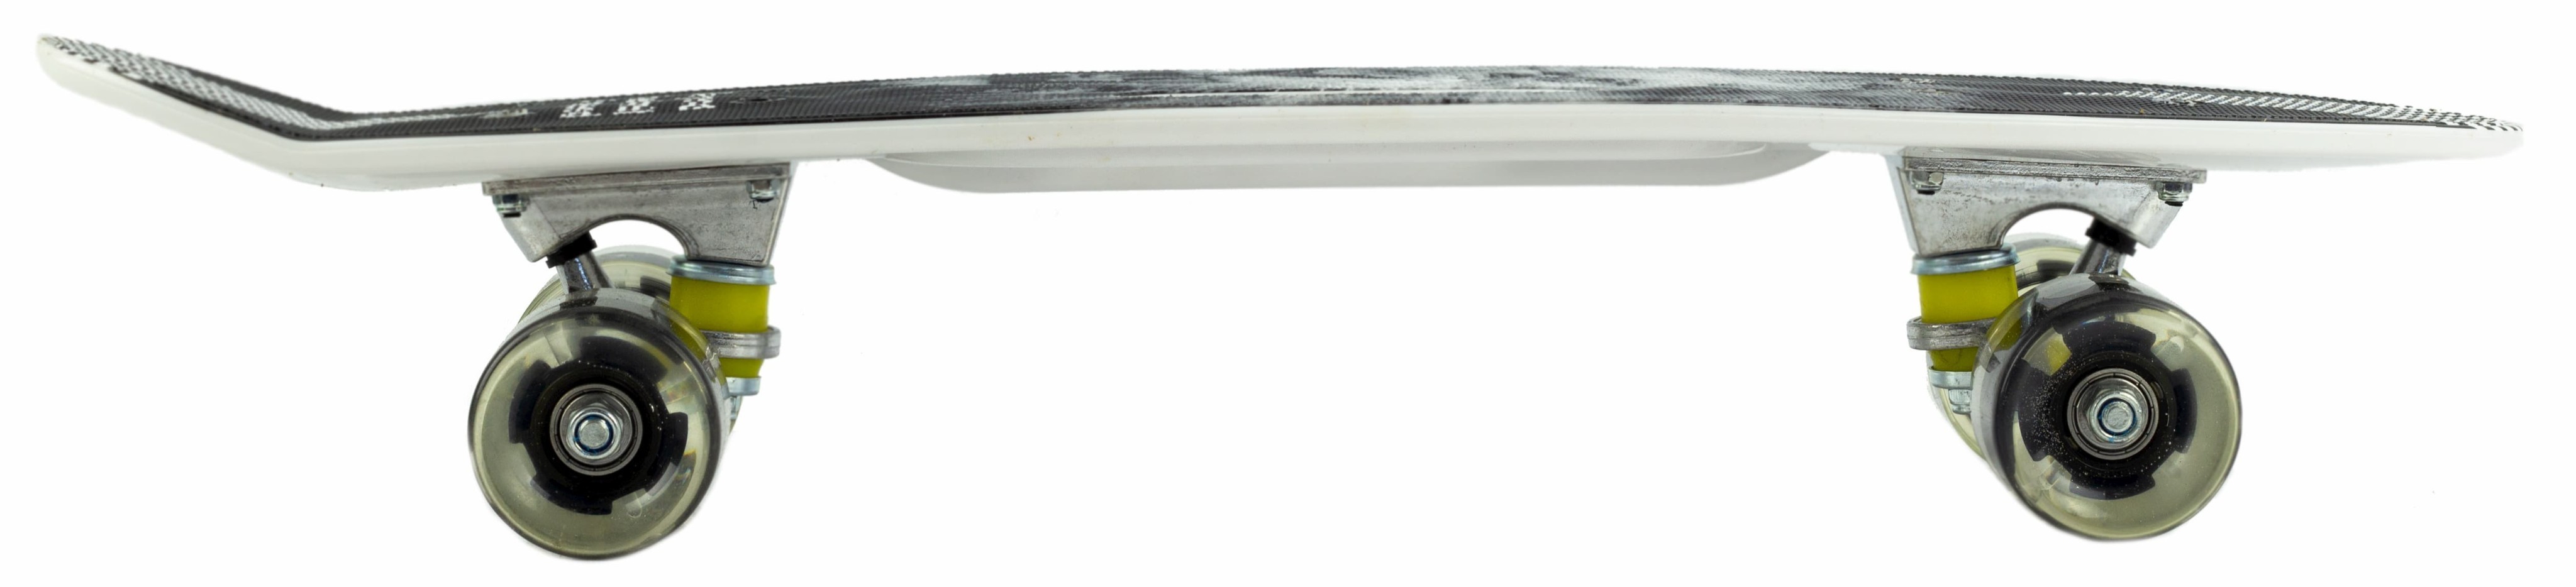 Пенни Борд со светящимися колесами и ручкой для переноски, 60 см. Т00403 / Микс